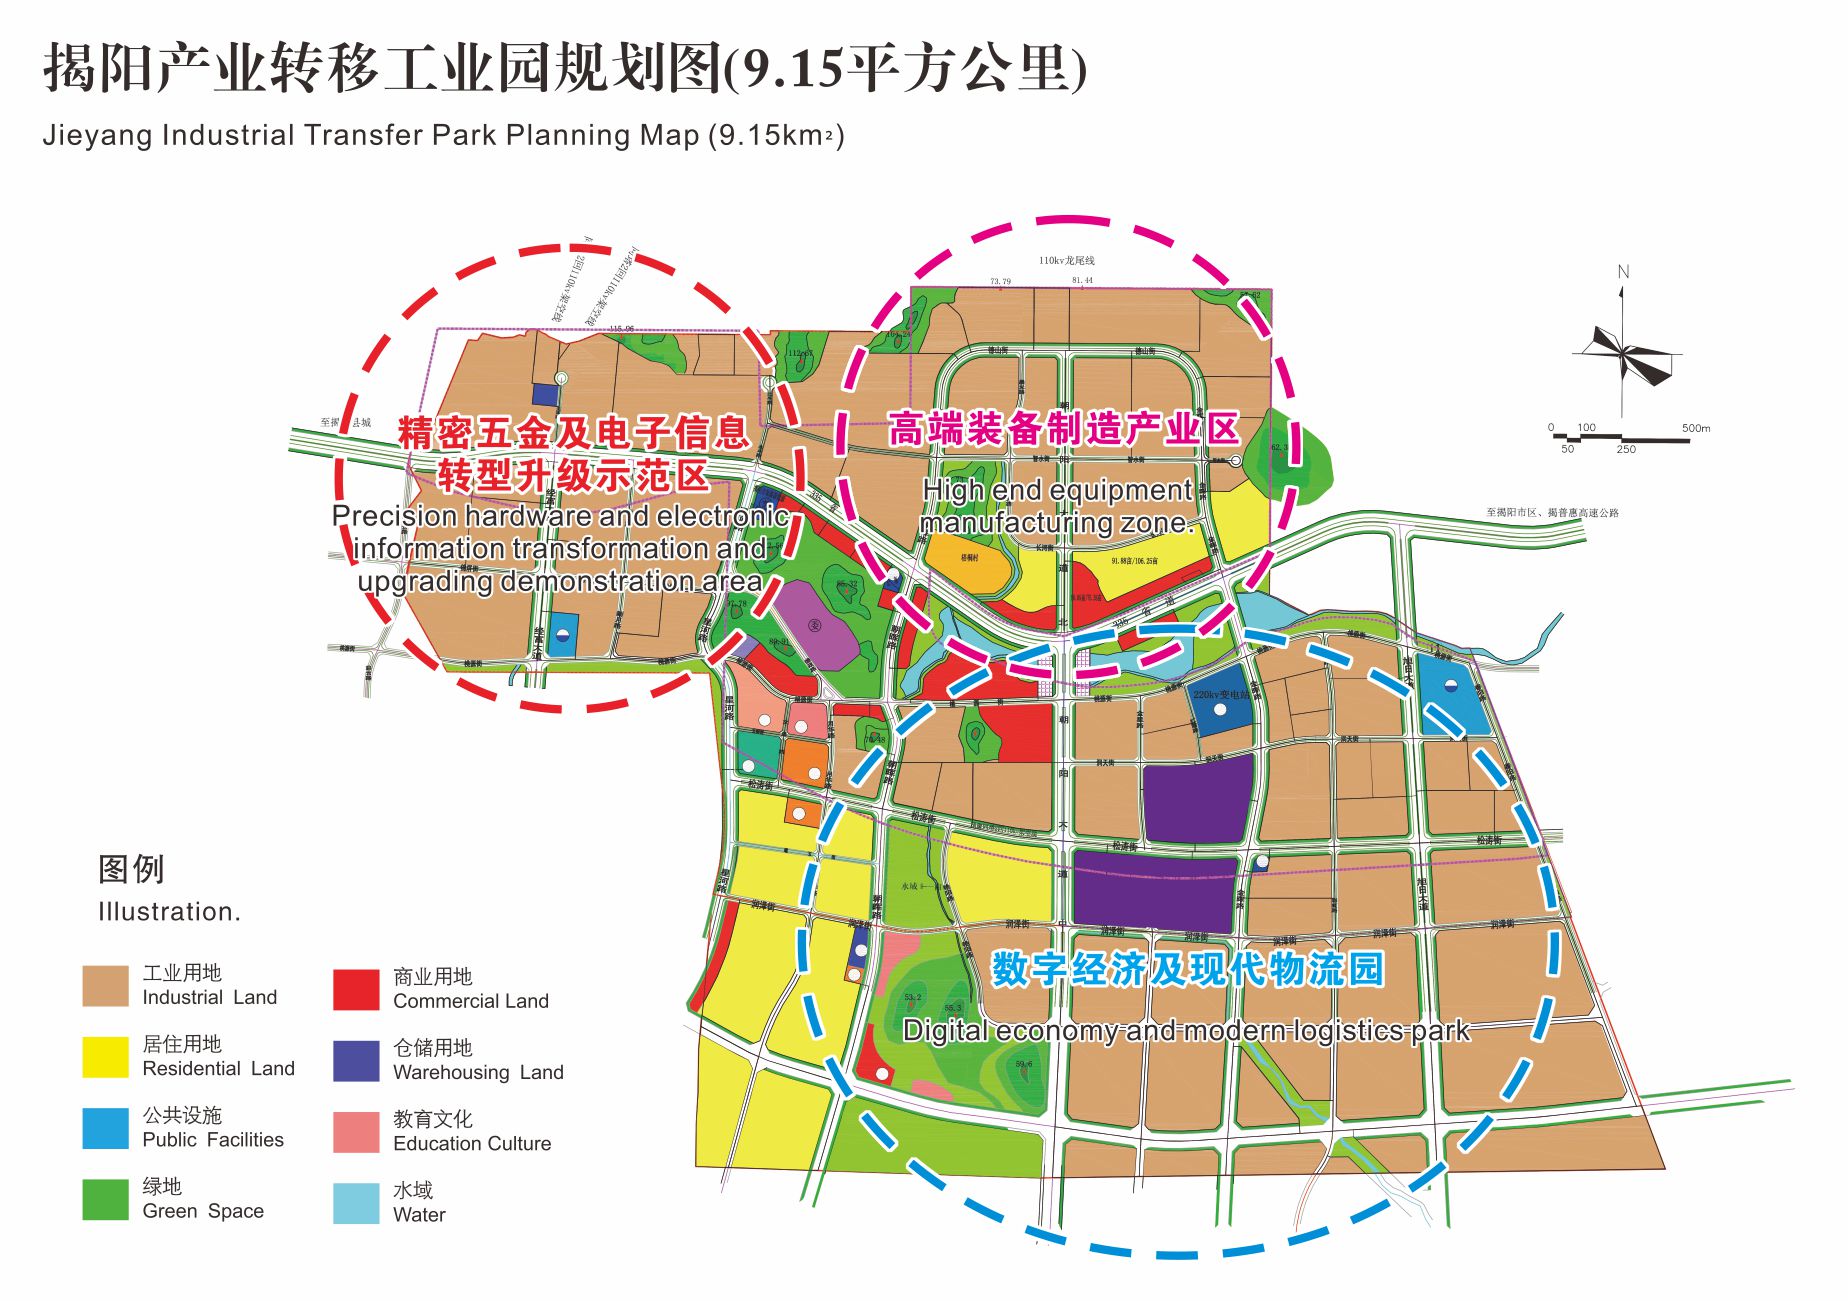 2.揭阳产业转移工业园9.15平方公里规划图.jpg